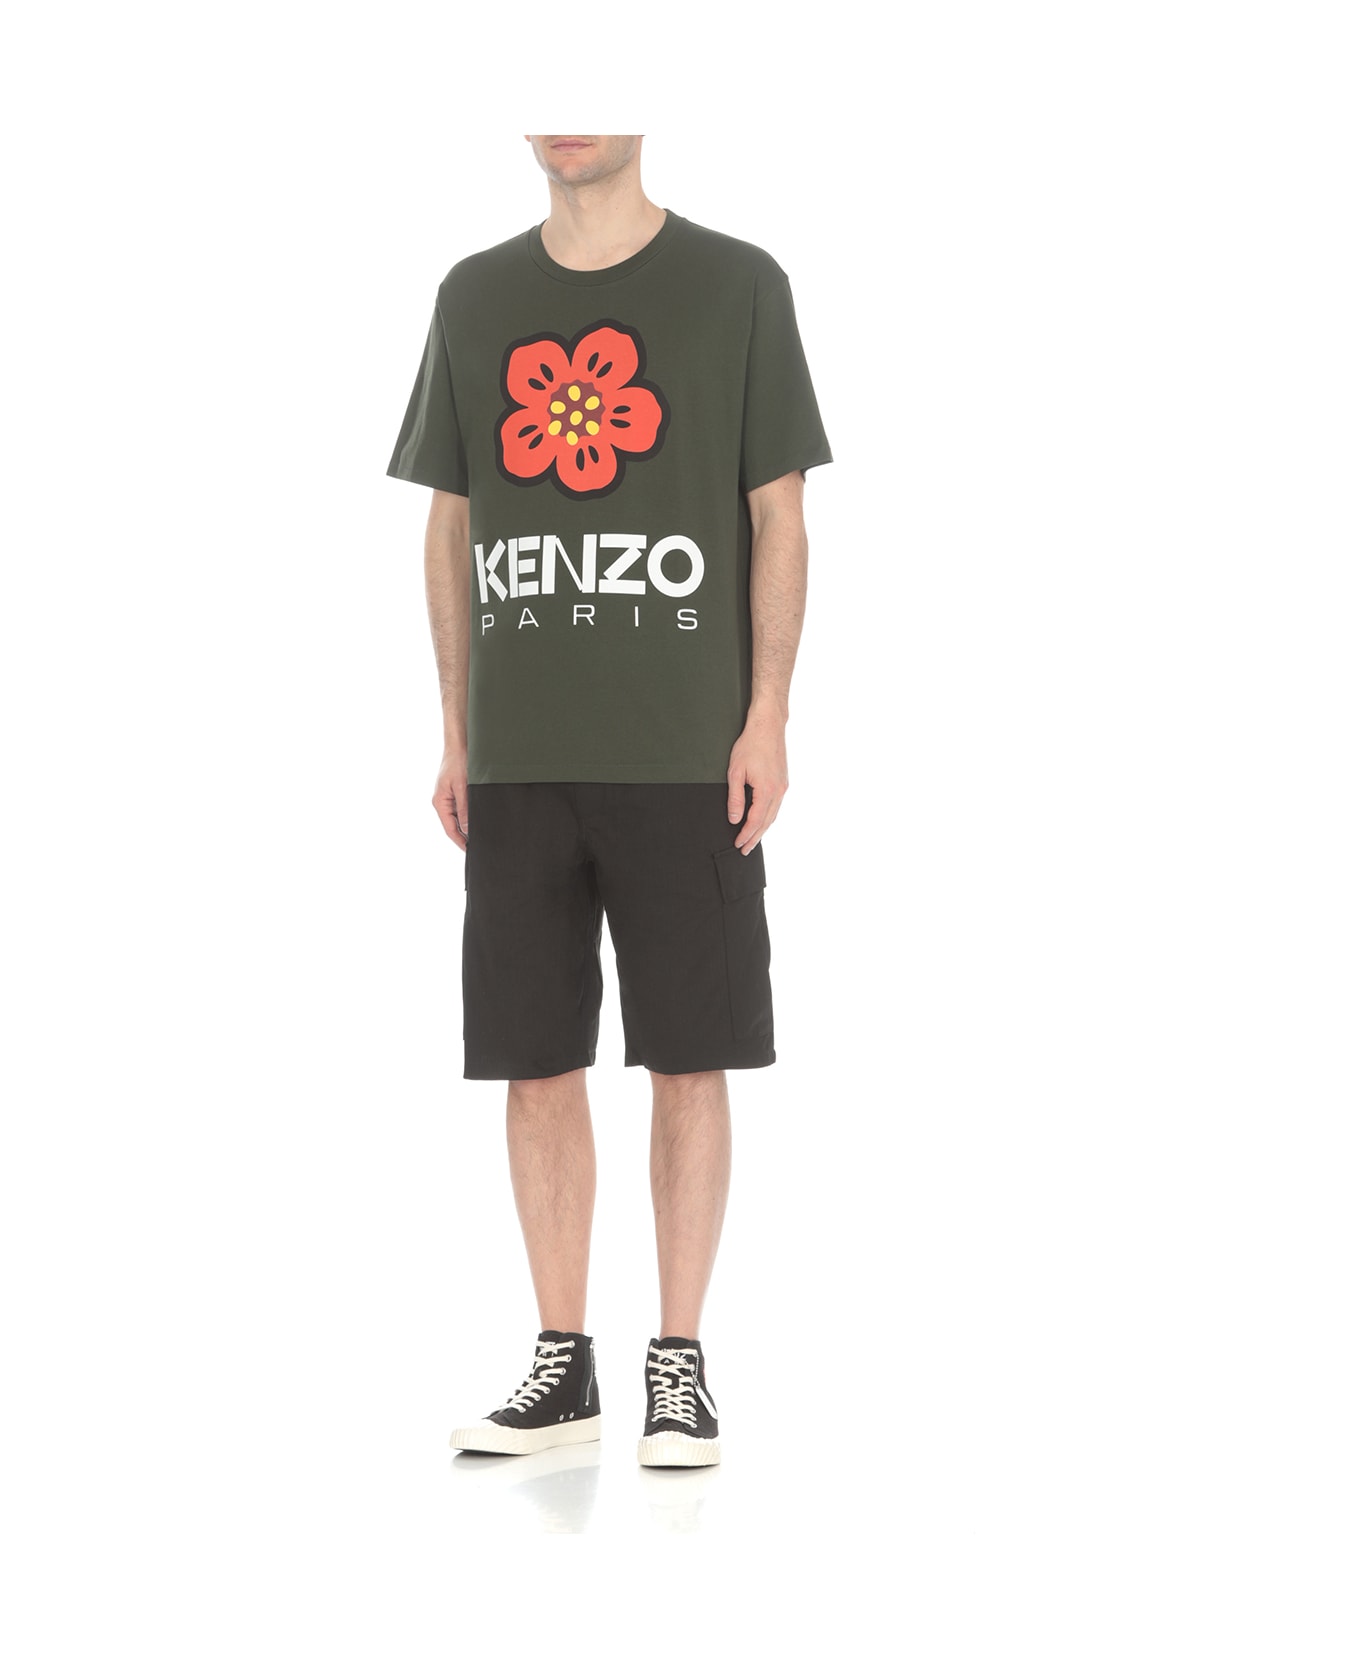 Kenzo Boke Flower T-shirt - Green シャツ